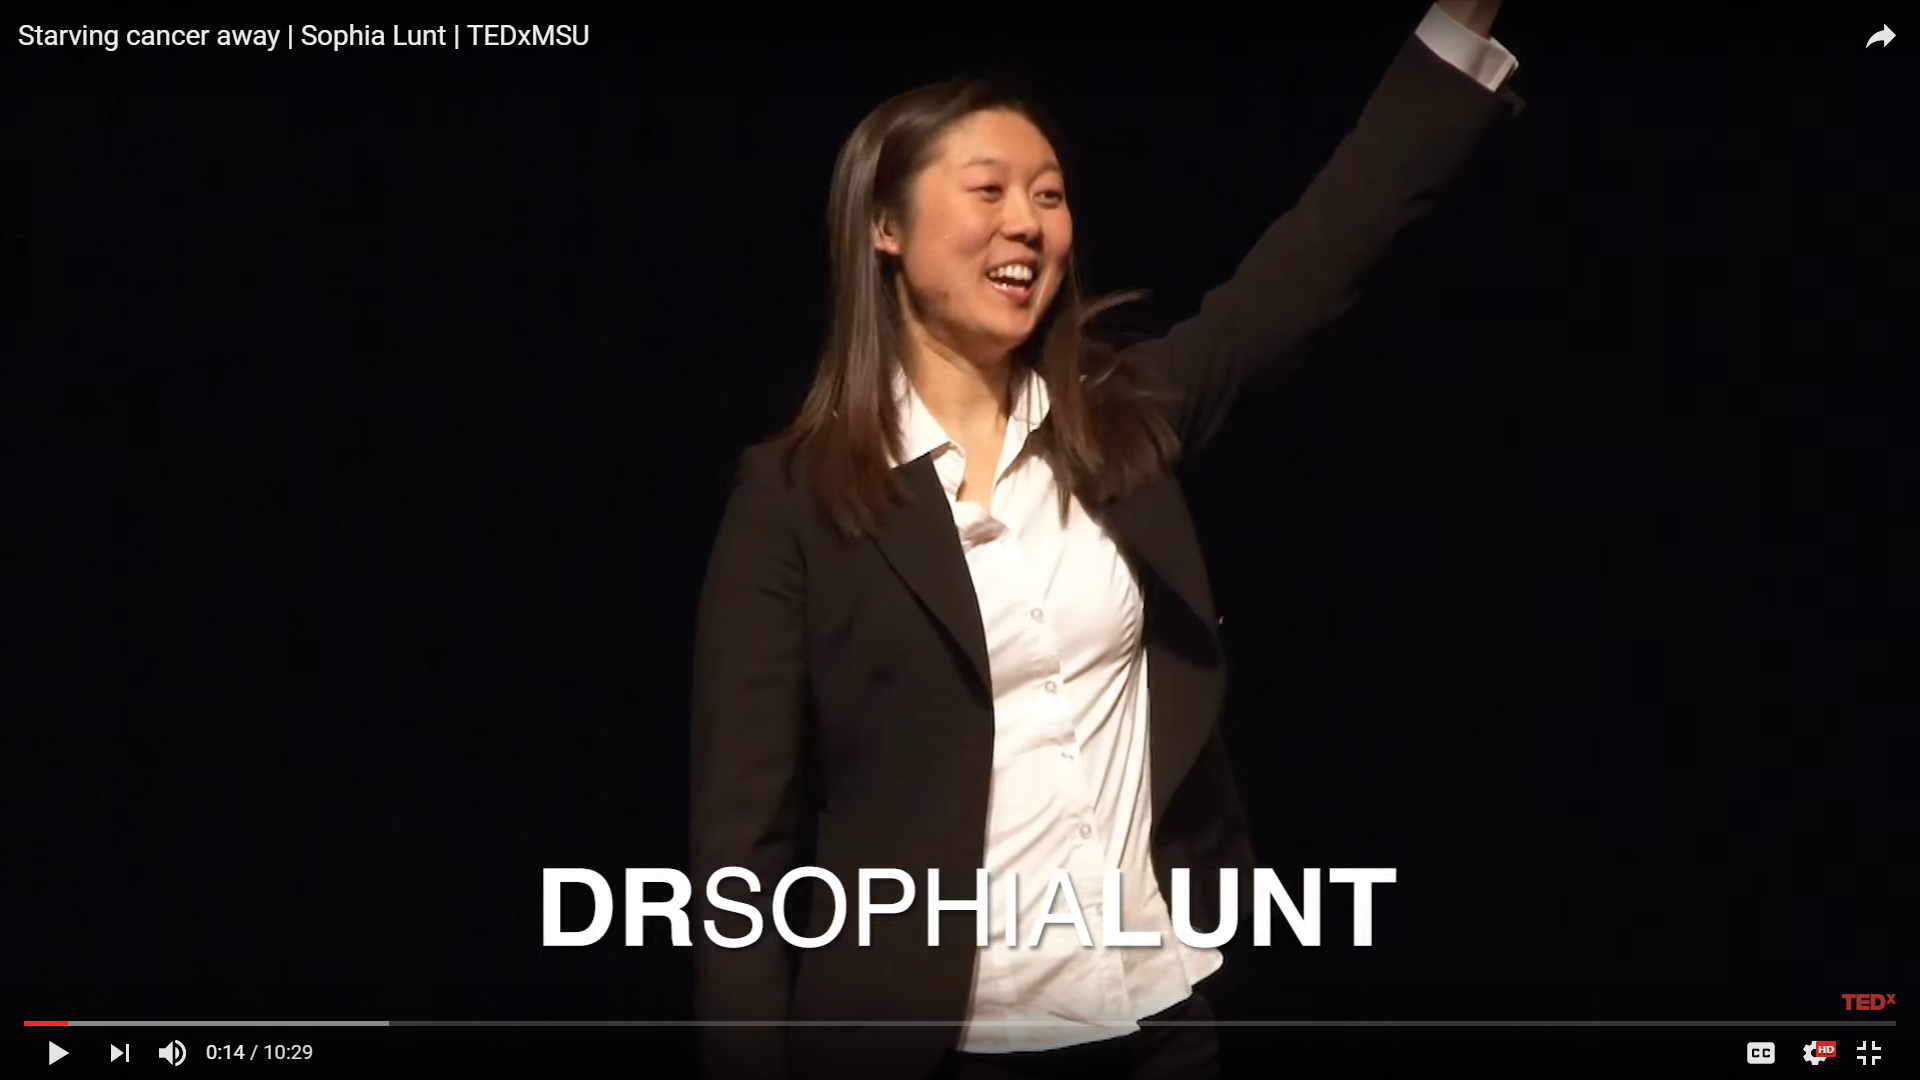  Dr. Lunt gives TEDx talk 